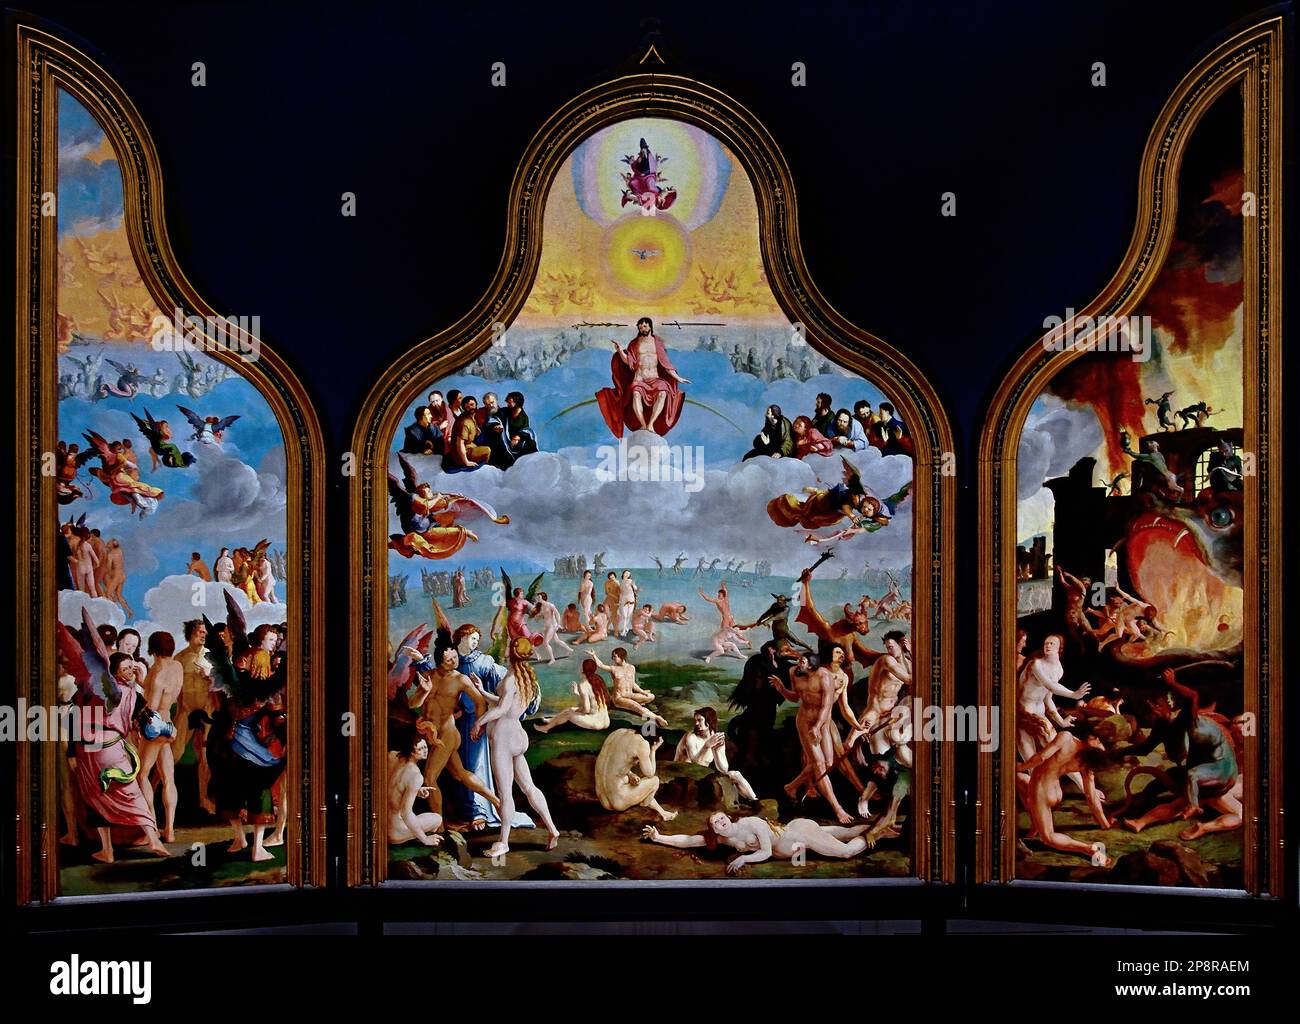 Das letzte Urteil 1527 Triptych von Lucas van LEYDEN, 1494 - 1533, Leiden Niederlande, Holland., Fine Arts Museum, Leiden, Lakenhal, Niederlande, Holland, Niederländisch Stockfoto